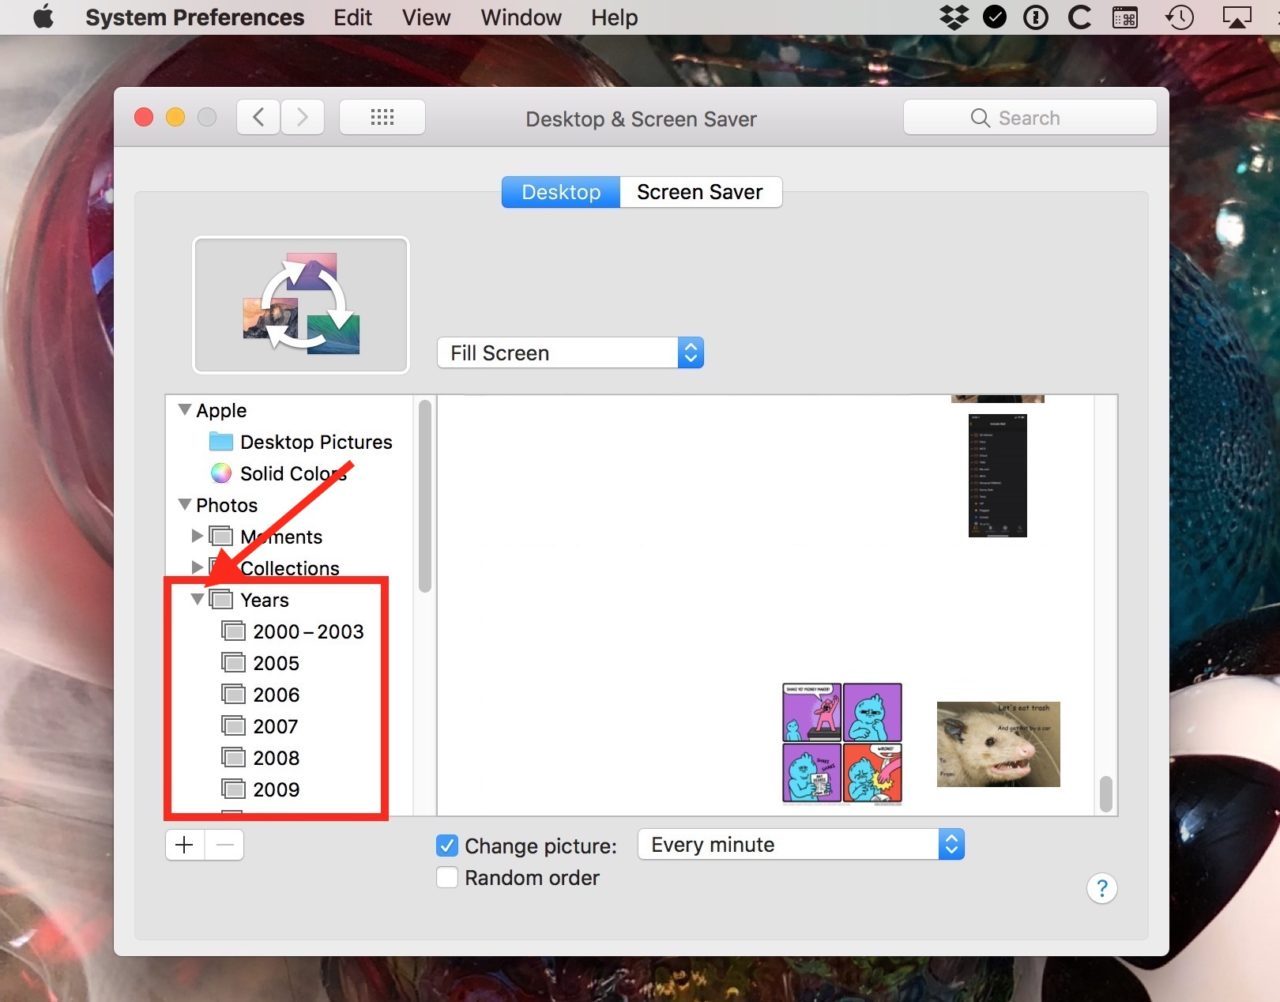 Mac mail app full screen randomly iphone